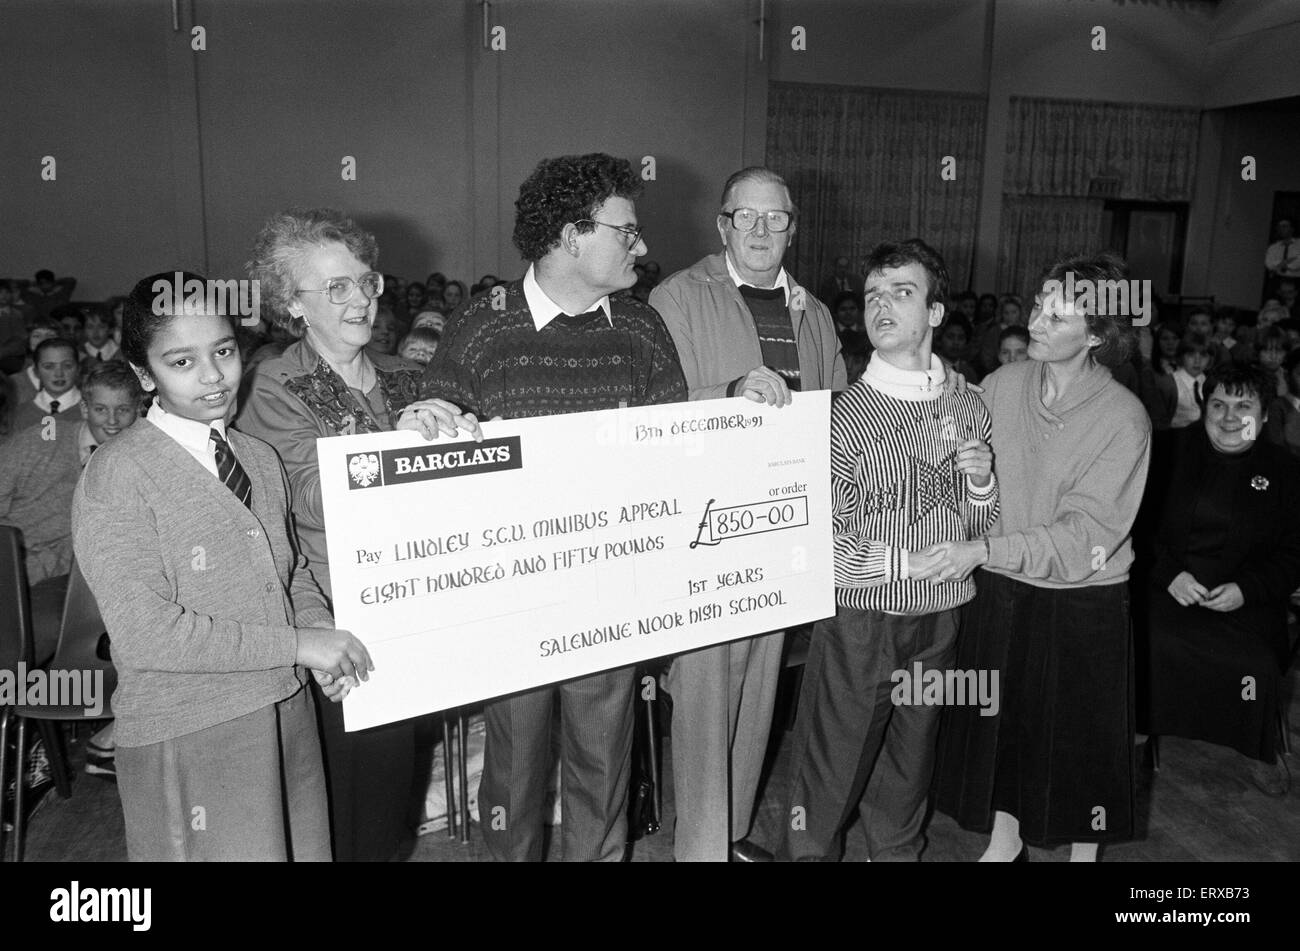 Salendine Nook High School hob £850 in gesponserten Schwimmen für einen Kleinbus Appell von Lindley Special Care Unit. 13. Dezember 1991. Stockfoto